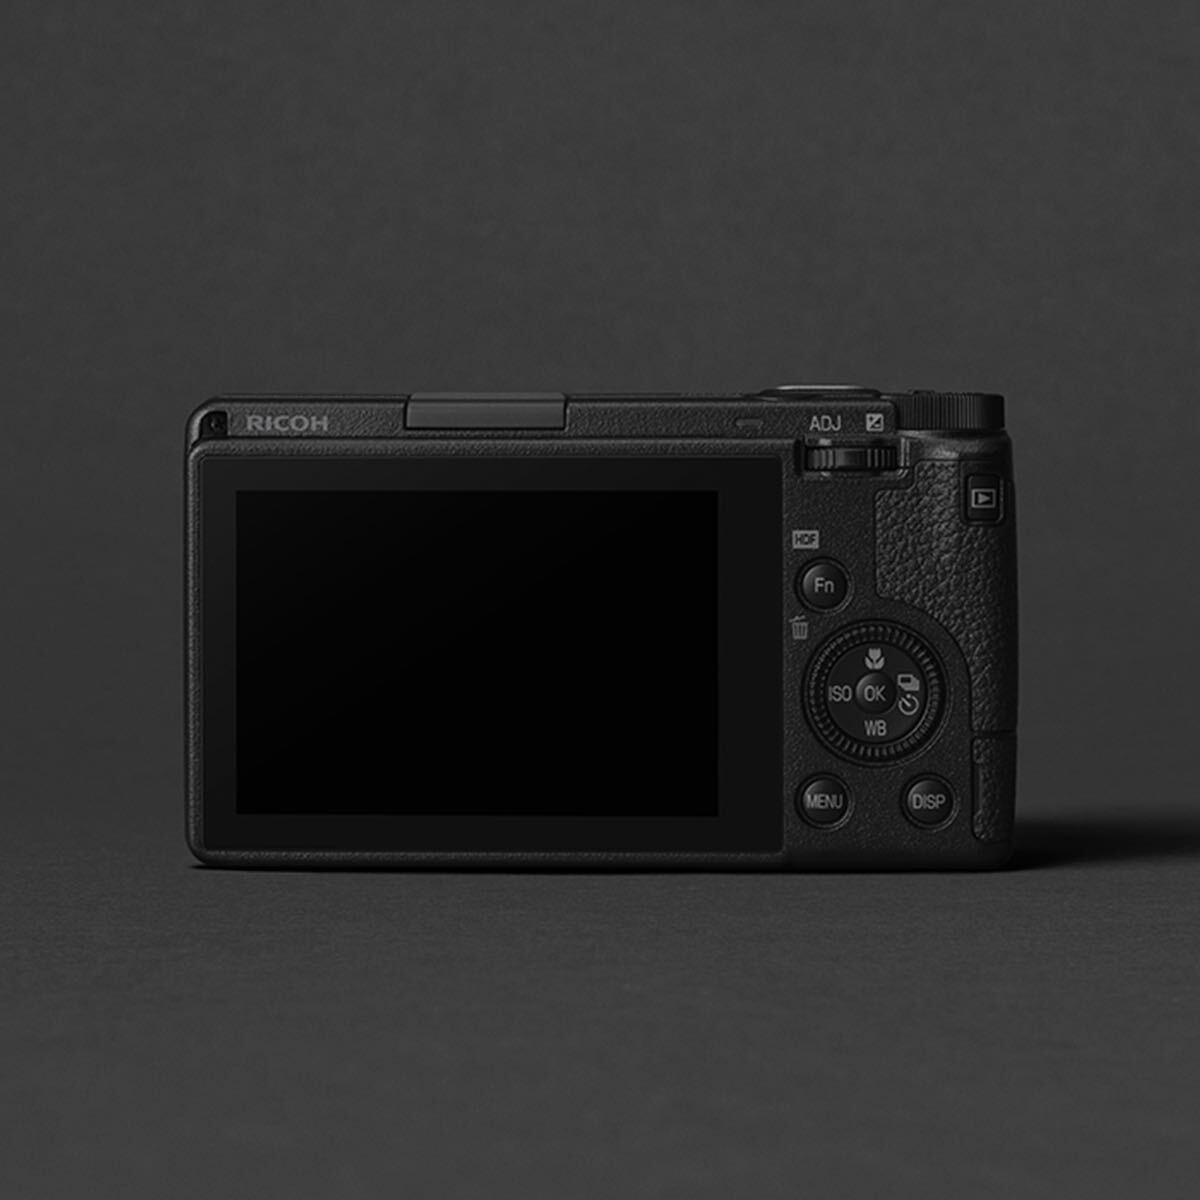  новый товар нераспечатанный!3 год гарантия!RICOH GR IIIx HDF GR3x специальный модель Ricoh высокого уровня компактный цифровой фотоаппарат подарок подарок ..